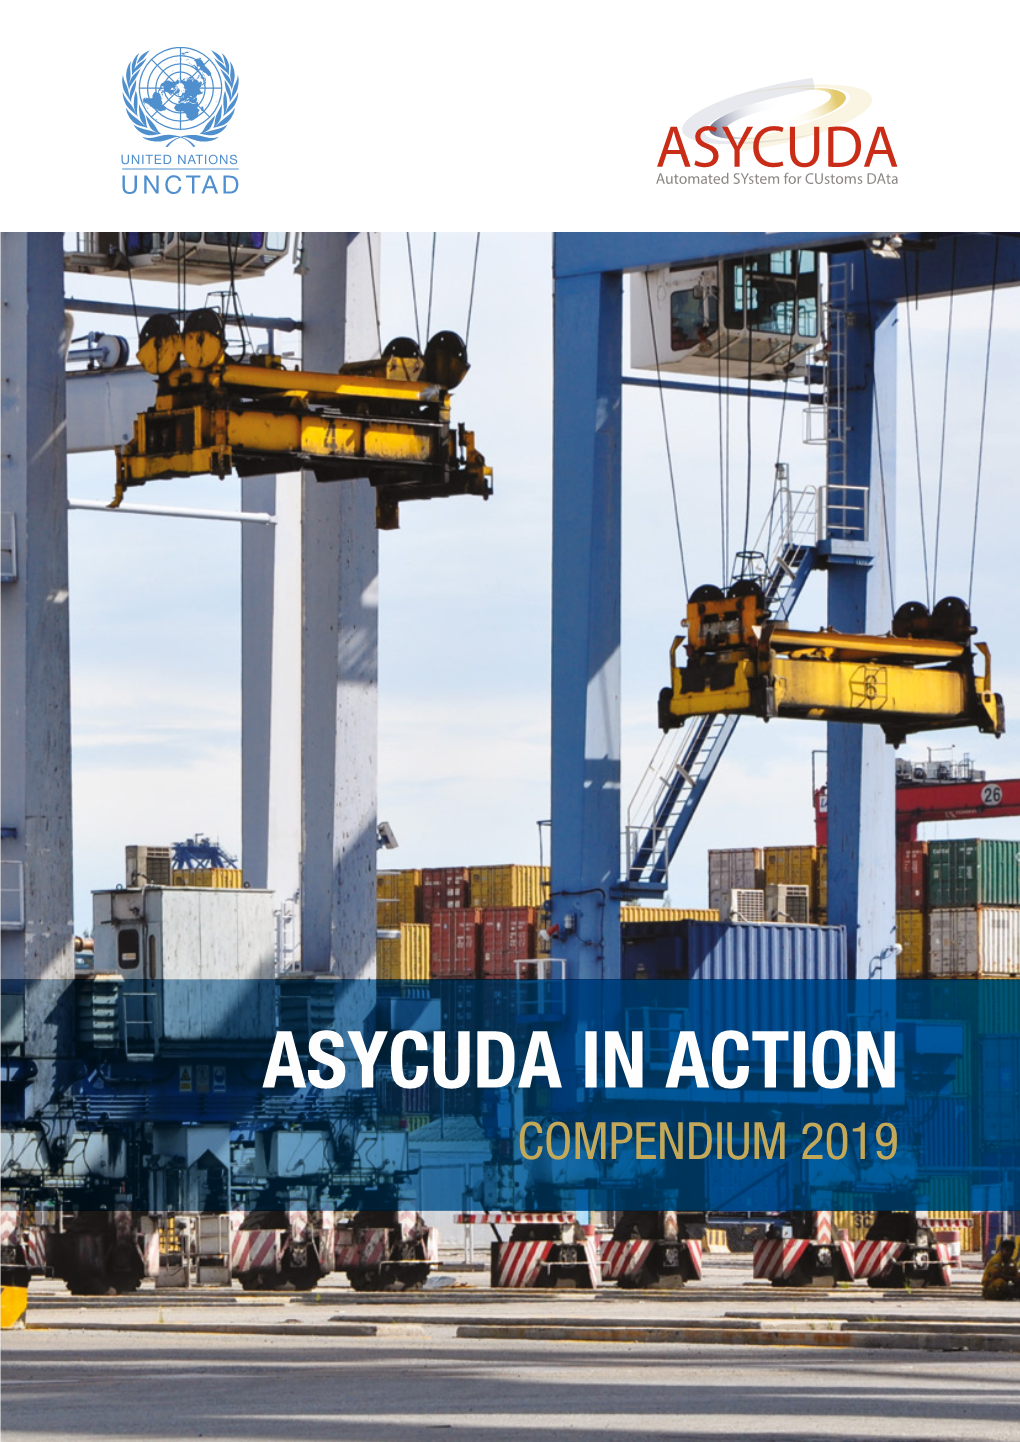 ASYCUDA in Action: Compendium 2019